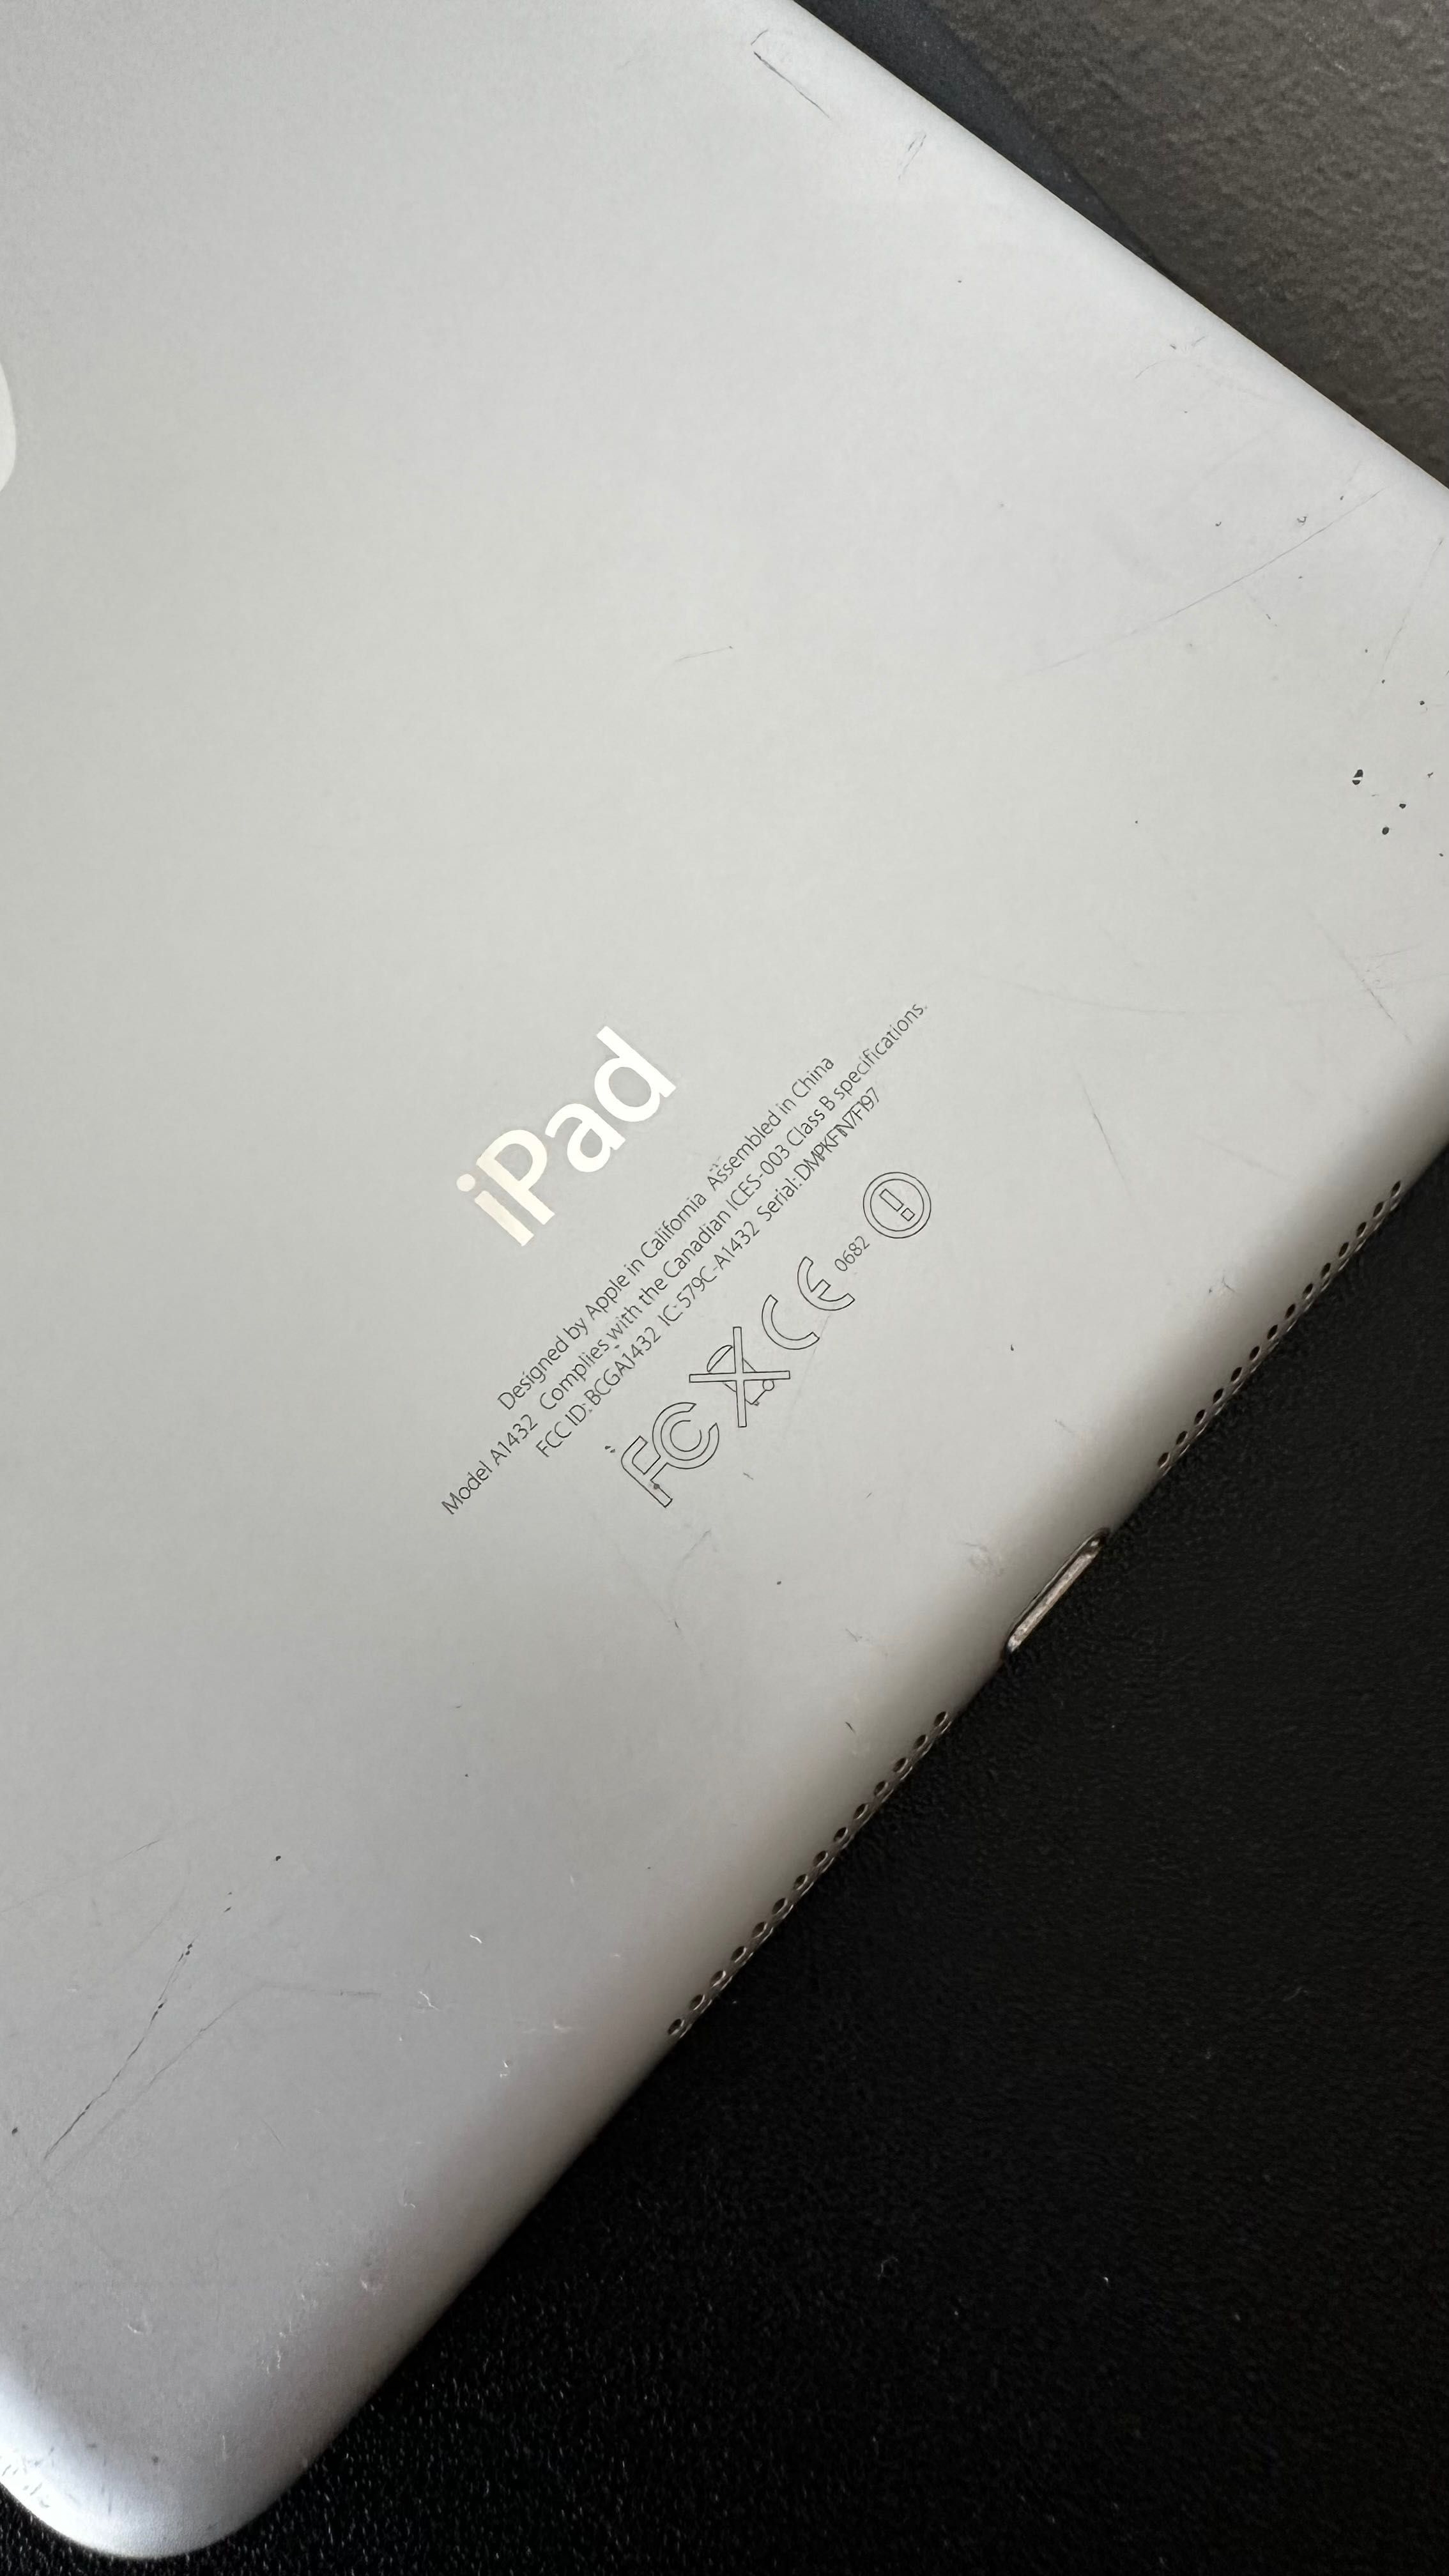 iPad mini 1 gen.